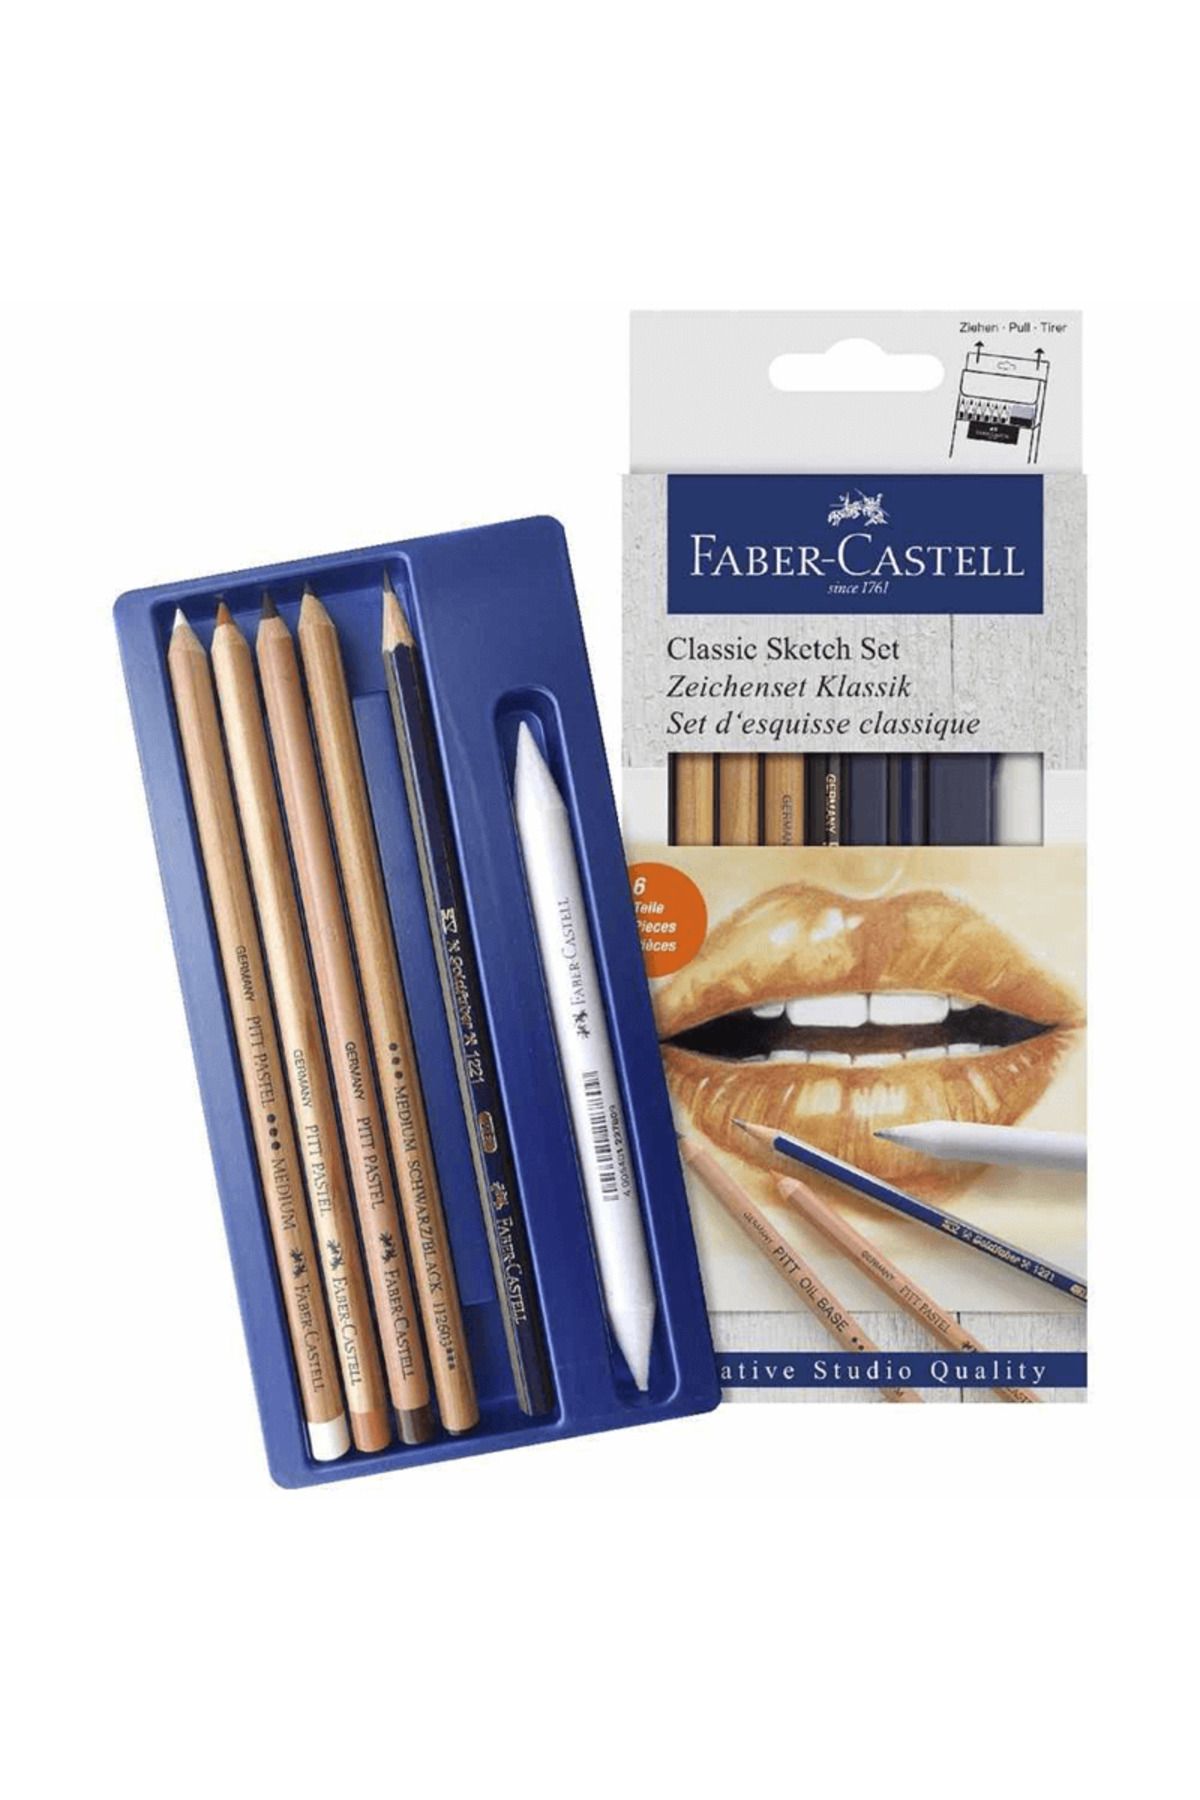 Faber Castell Klasik Sketch Seti / 5110114004